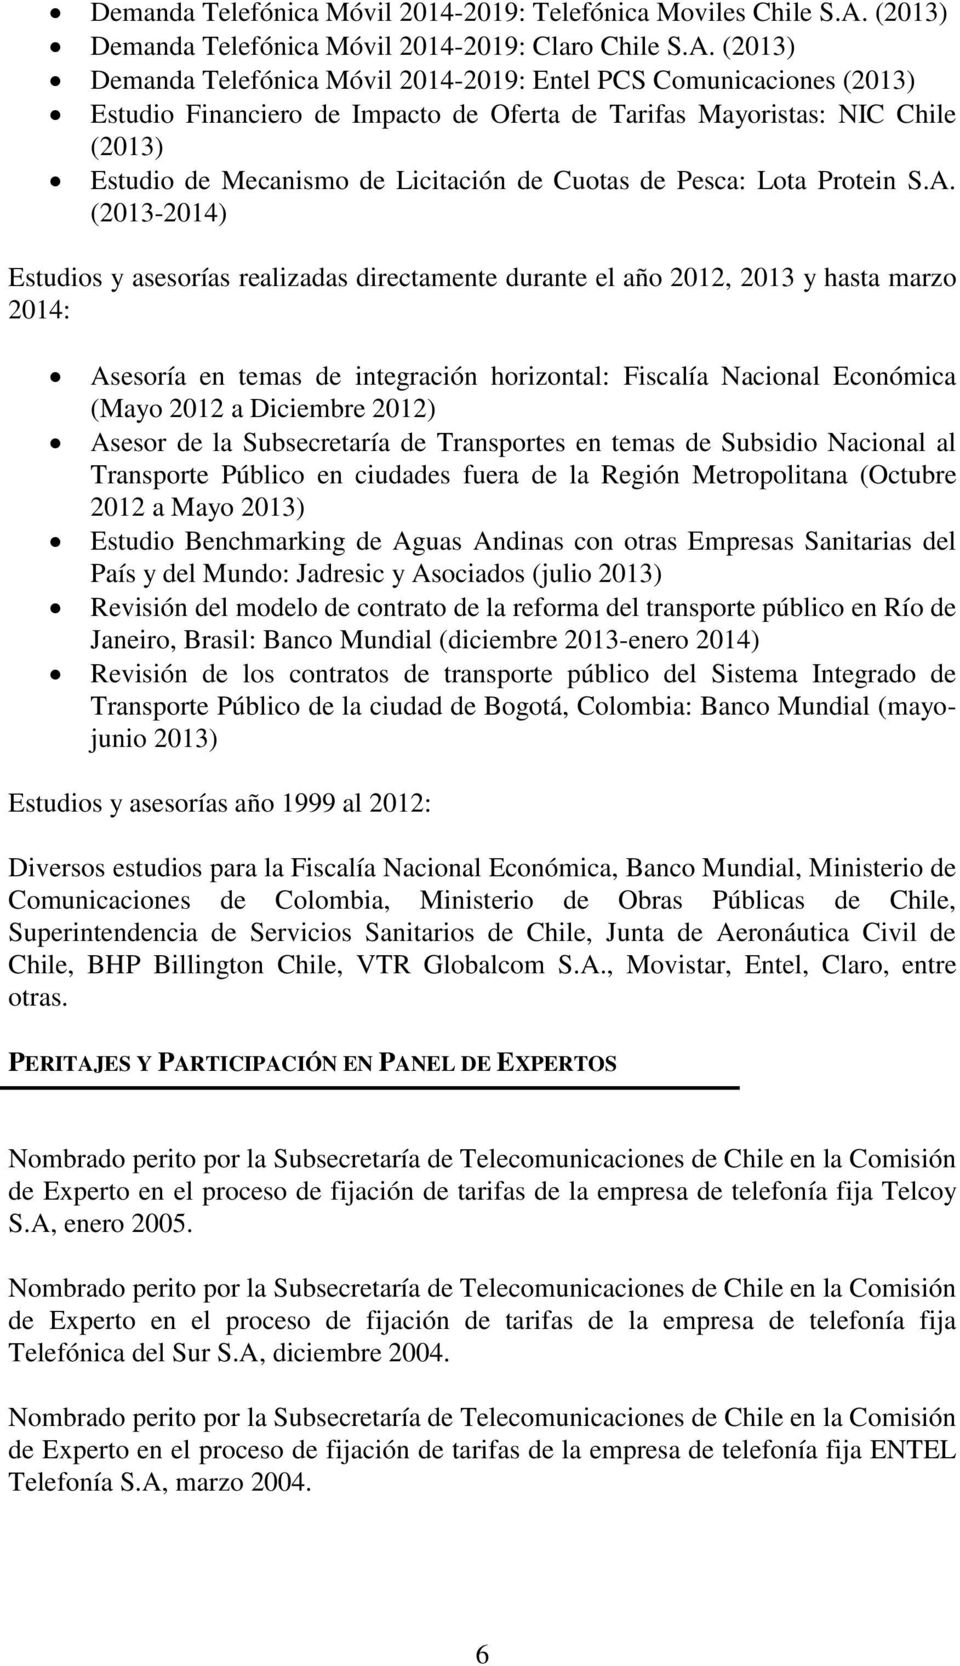 (2013) Demanda Telefónica Móvil 2014-2019: Entel PCS Comunicaciones (2013) Estudio Financiero de Impacto de Oferta de Tarifas Mayoristas: NIC Chile (2013) Estudio de Mecanismo de Licitación de Cuotas